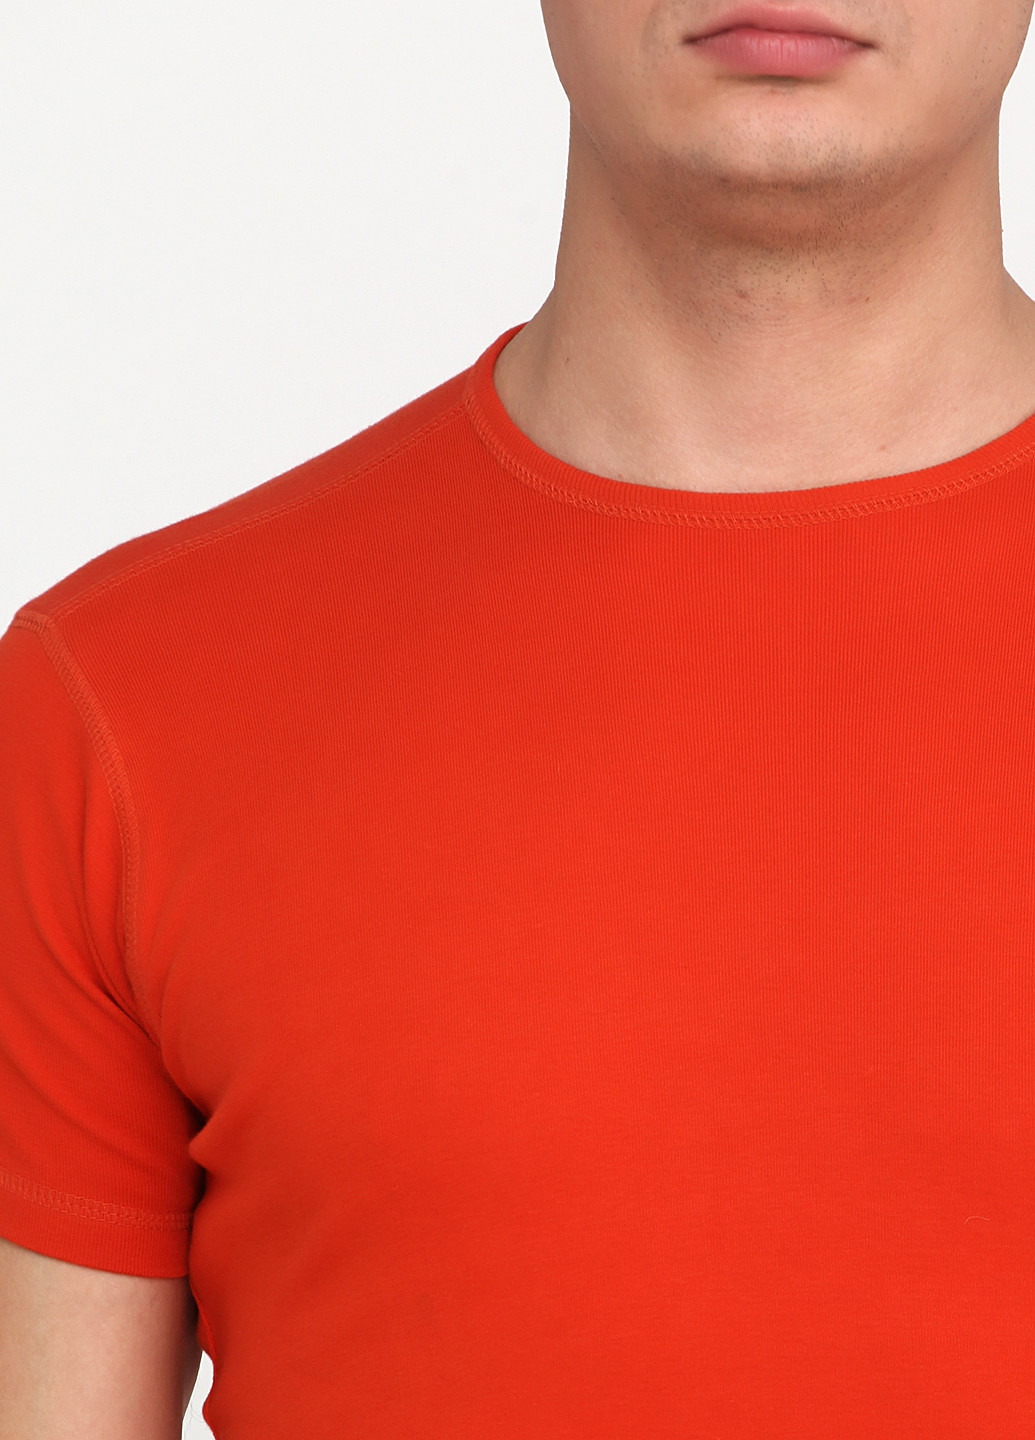 Оранжево-красная футболка Avis